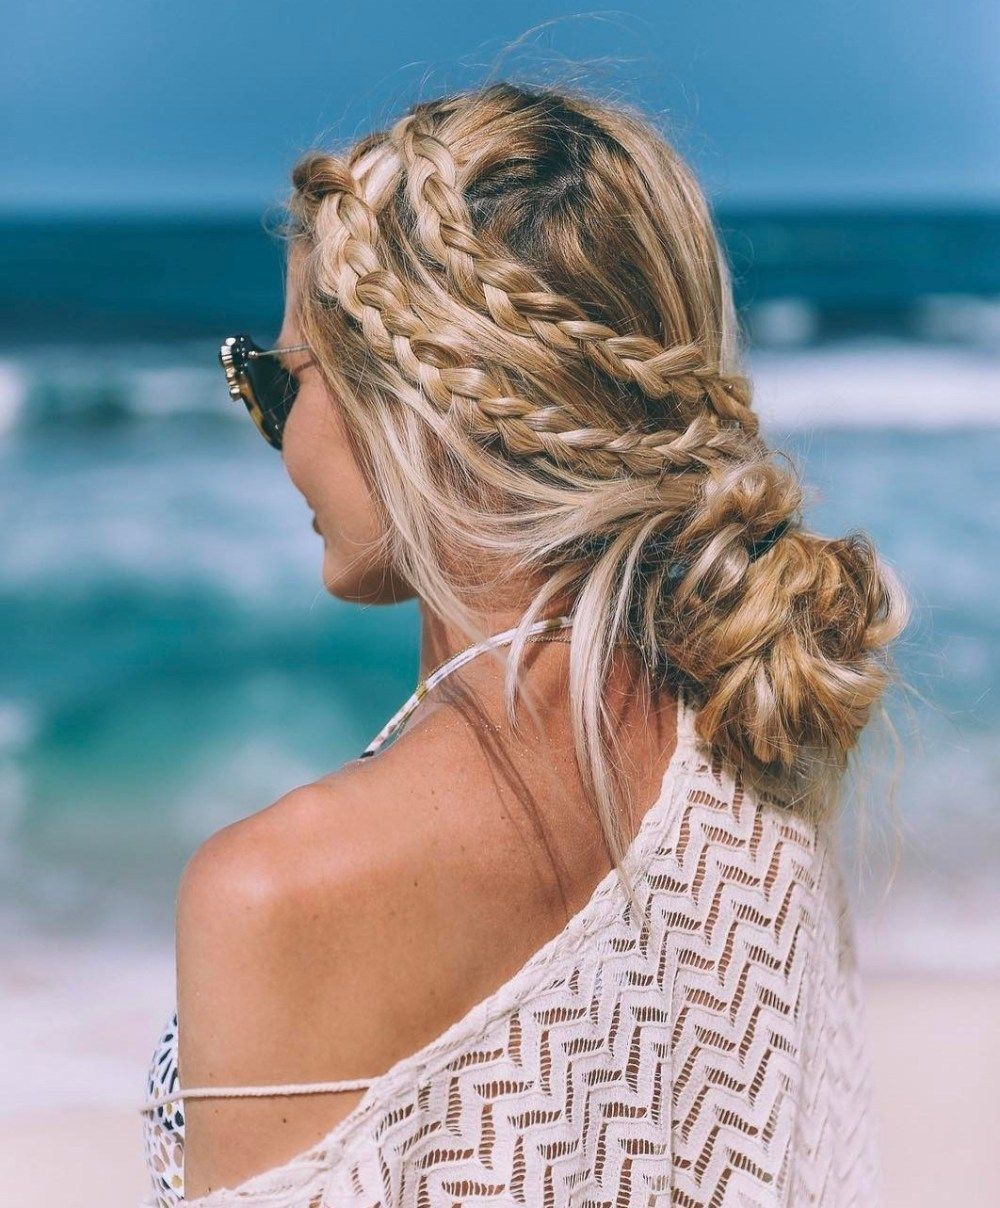 20 Inspiring Beach Hair Ideas for Beautiful Vacation -   11 summer hairstyles Braided ideas